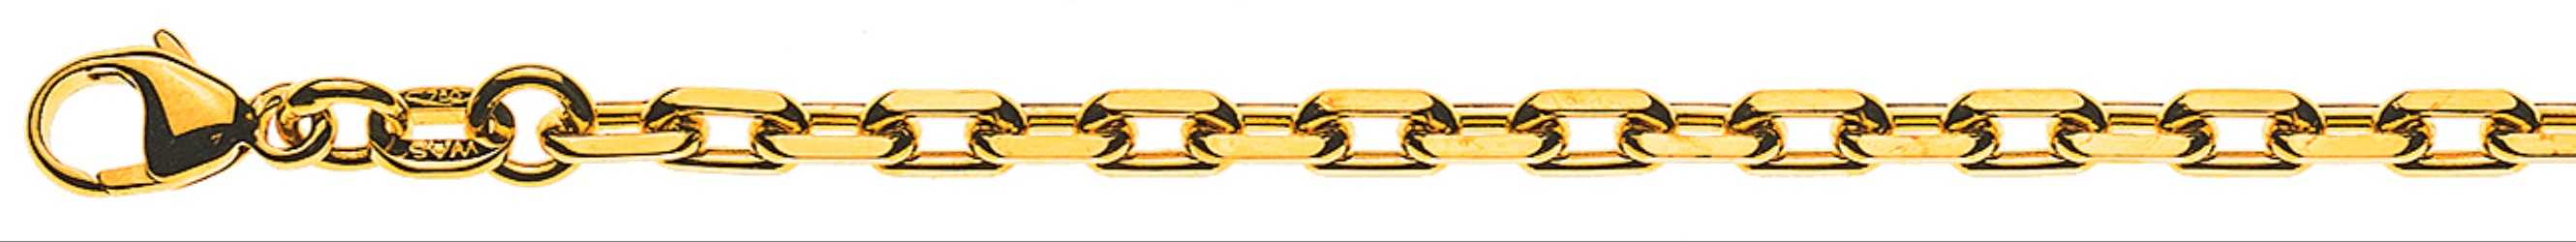 AURONOS Prestige Bracelet ancre or jaune 18 carats 24cm 2.9mm